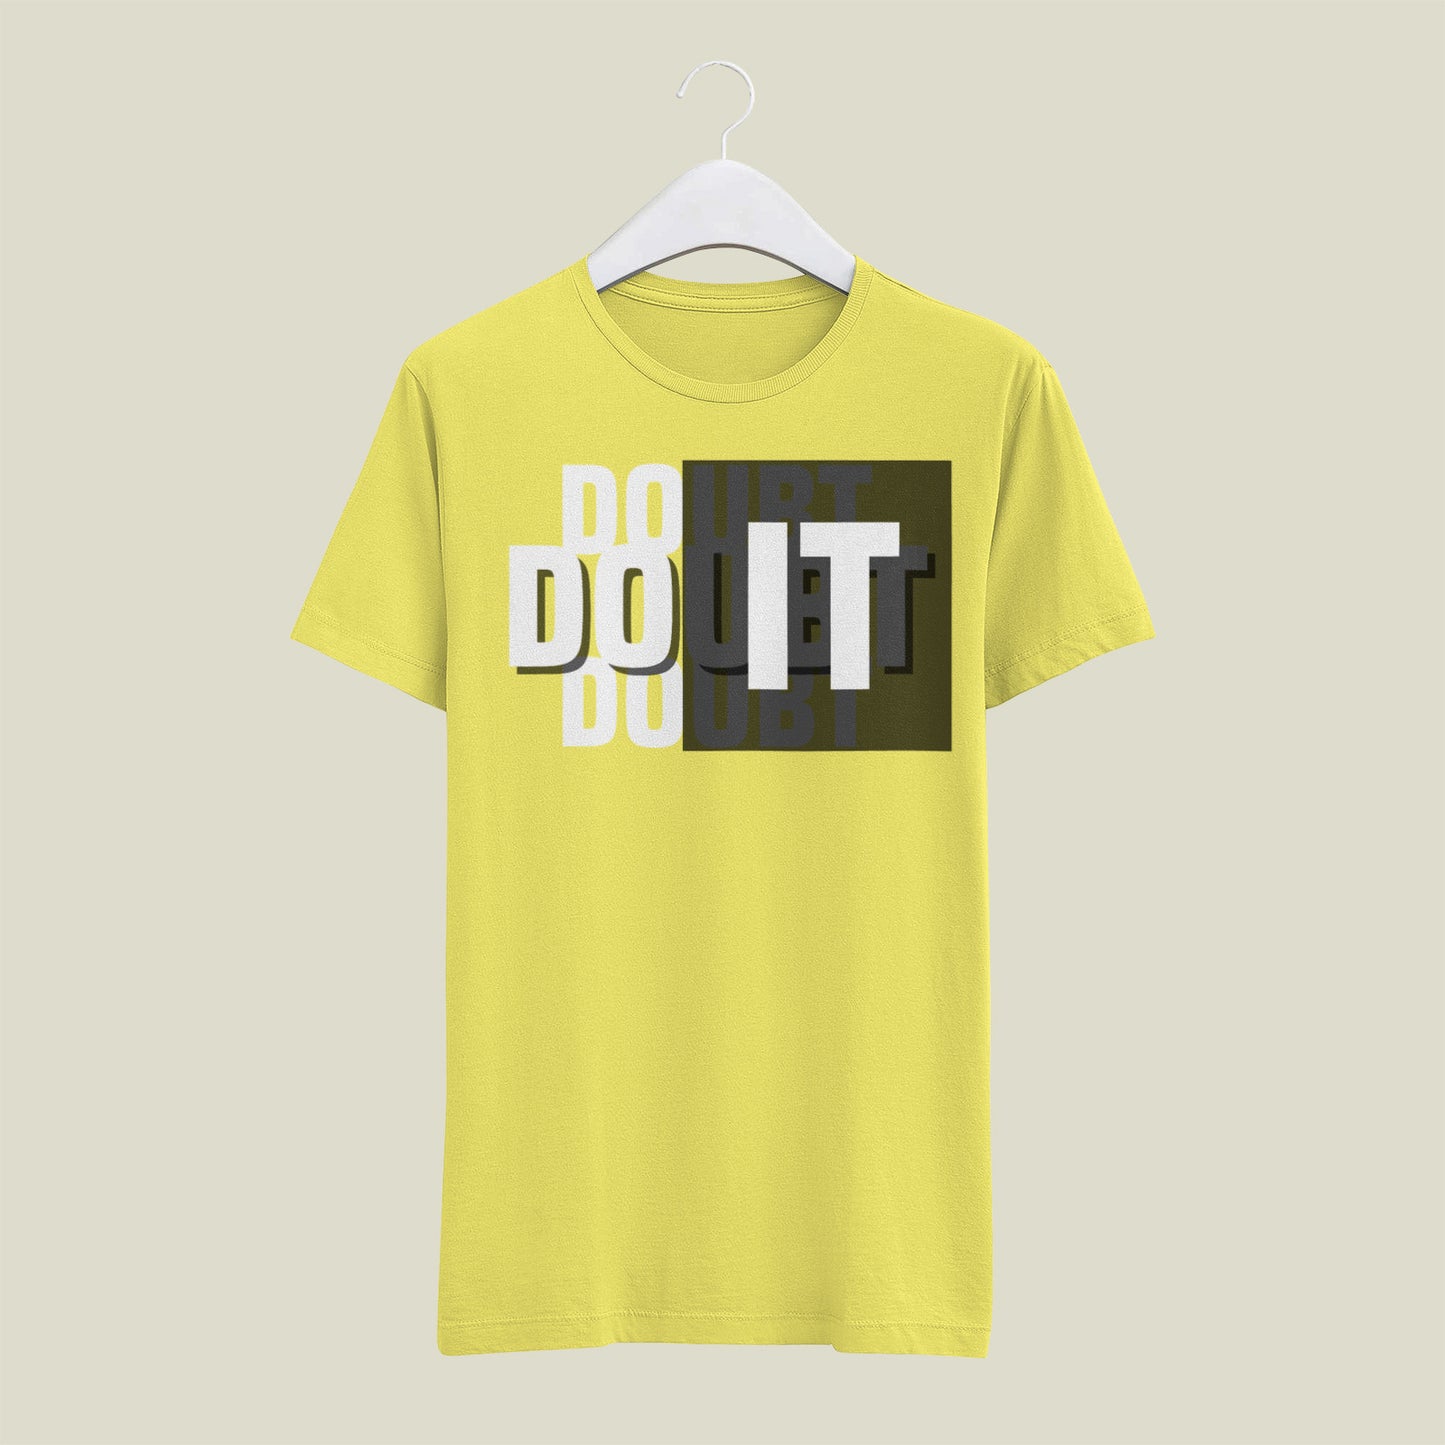 DO IT T Shirt